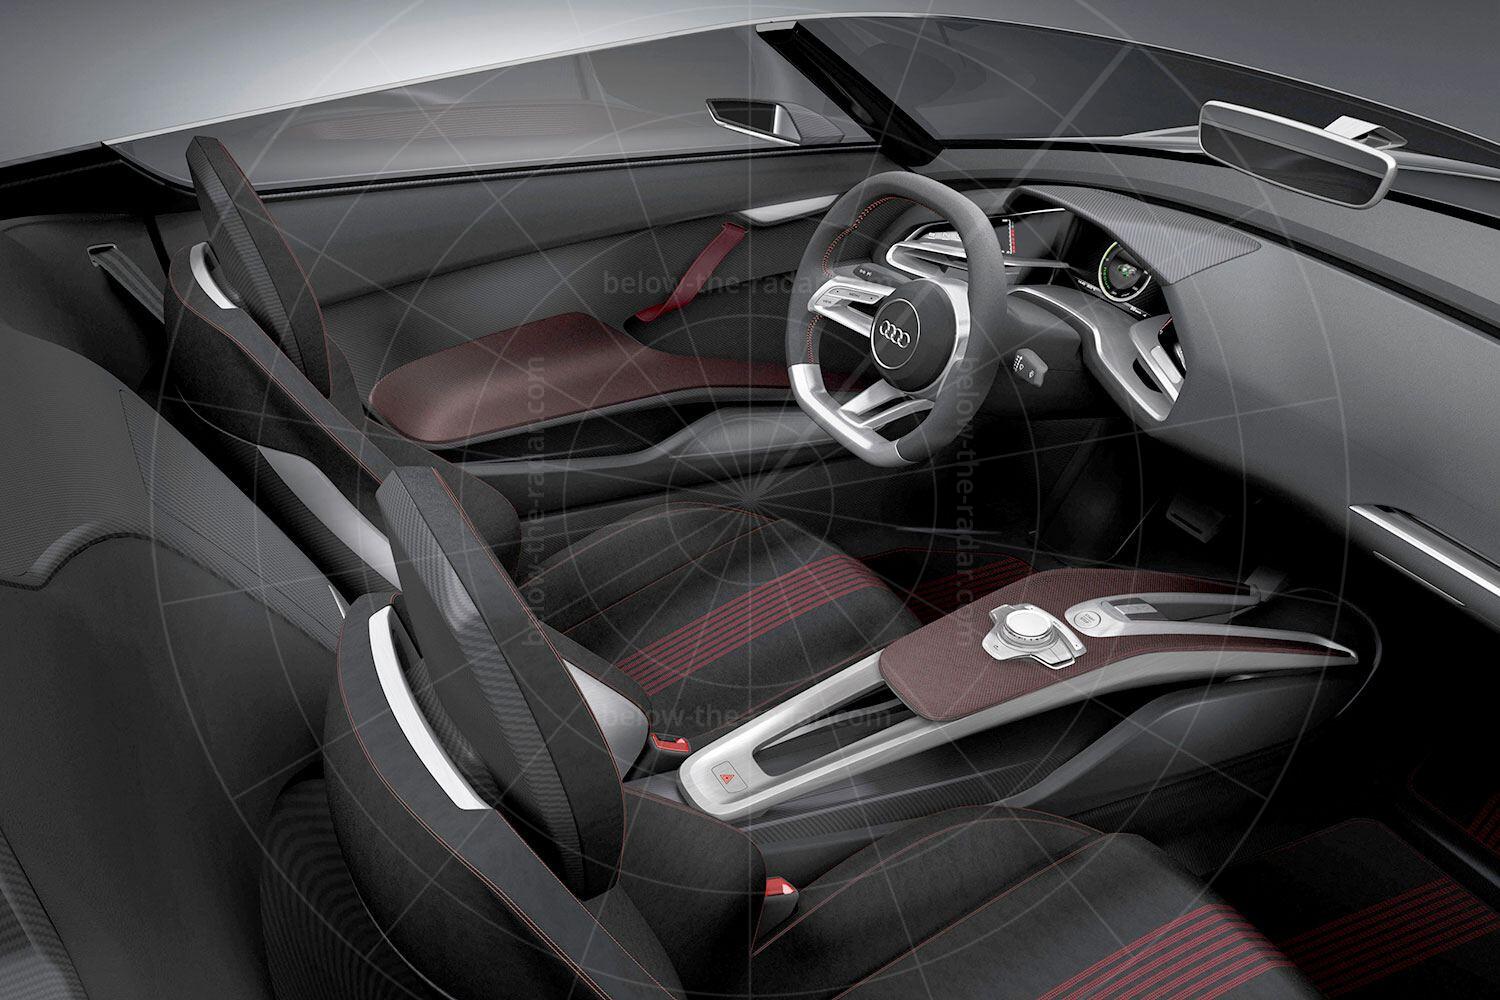 Audi e-tron Spyder interior Pic: Audi | Audi e-tron Spyder interior